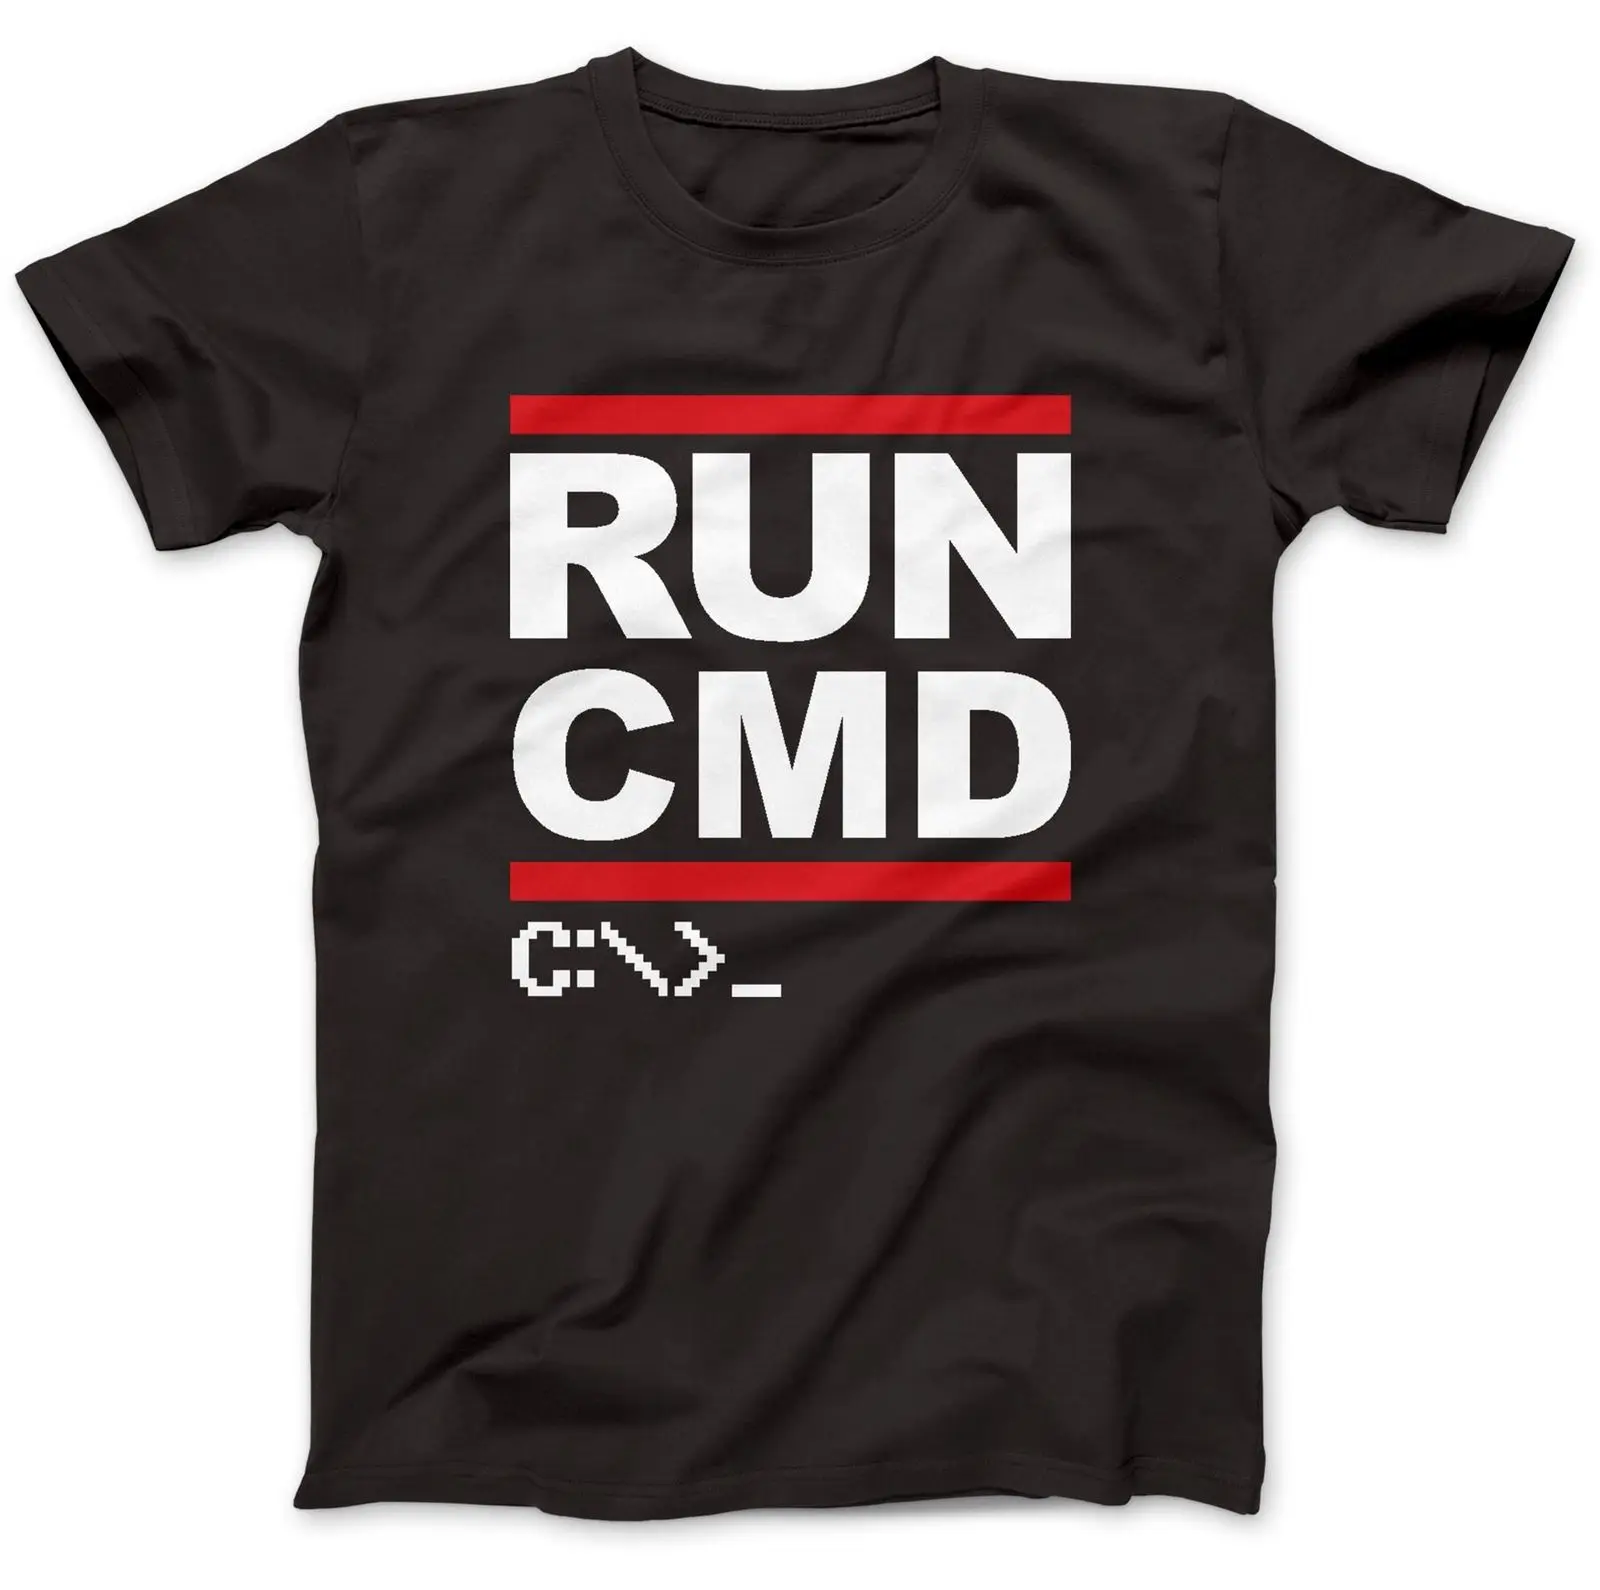 Run CMD компьютер футболка программиста 100% хлопок высокого качества чудак, дурачок смешной подарок